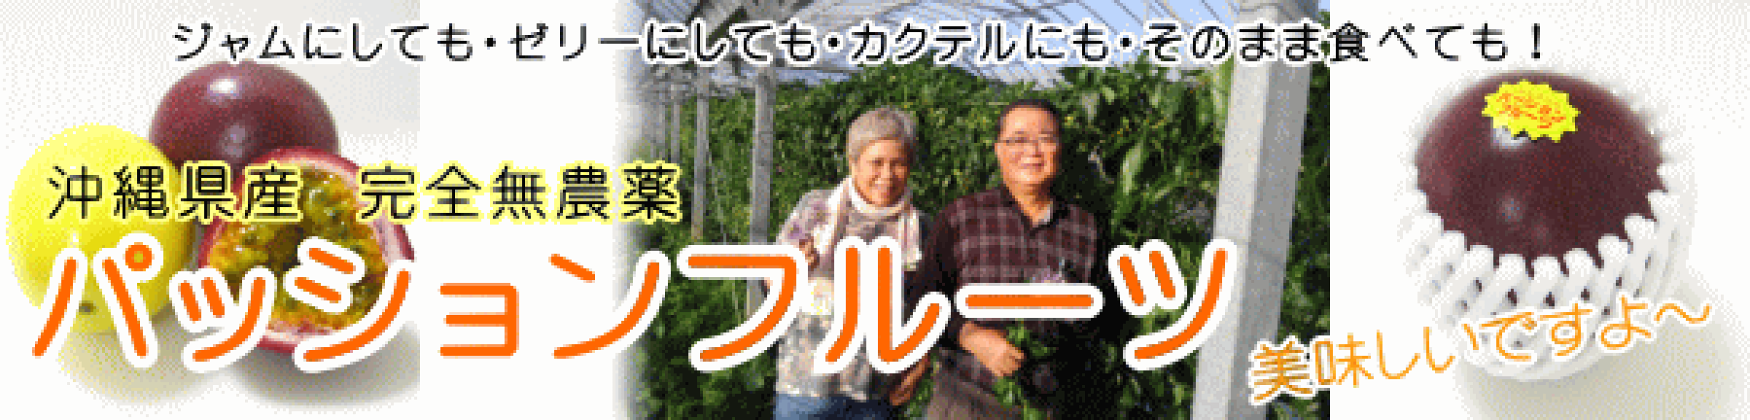 沖縄県産パッションフルーツ